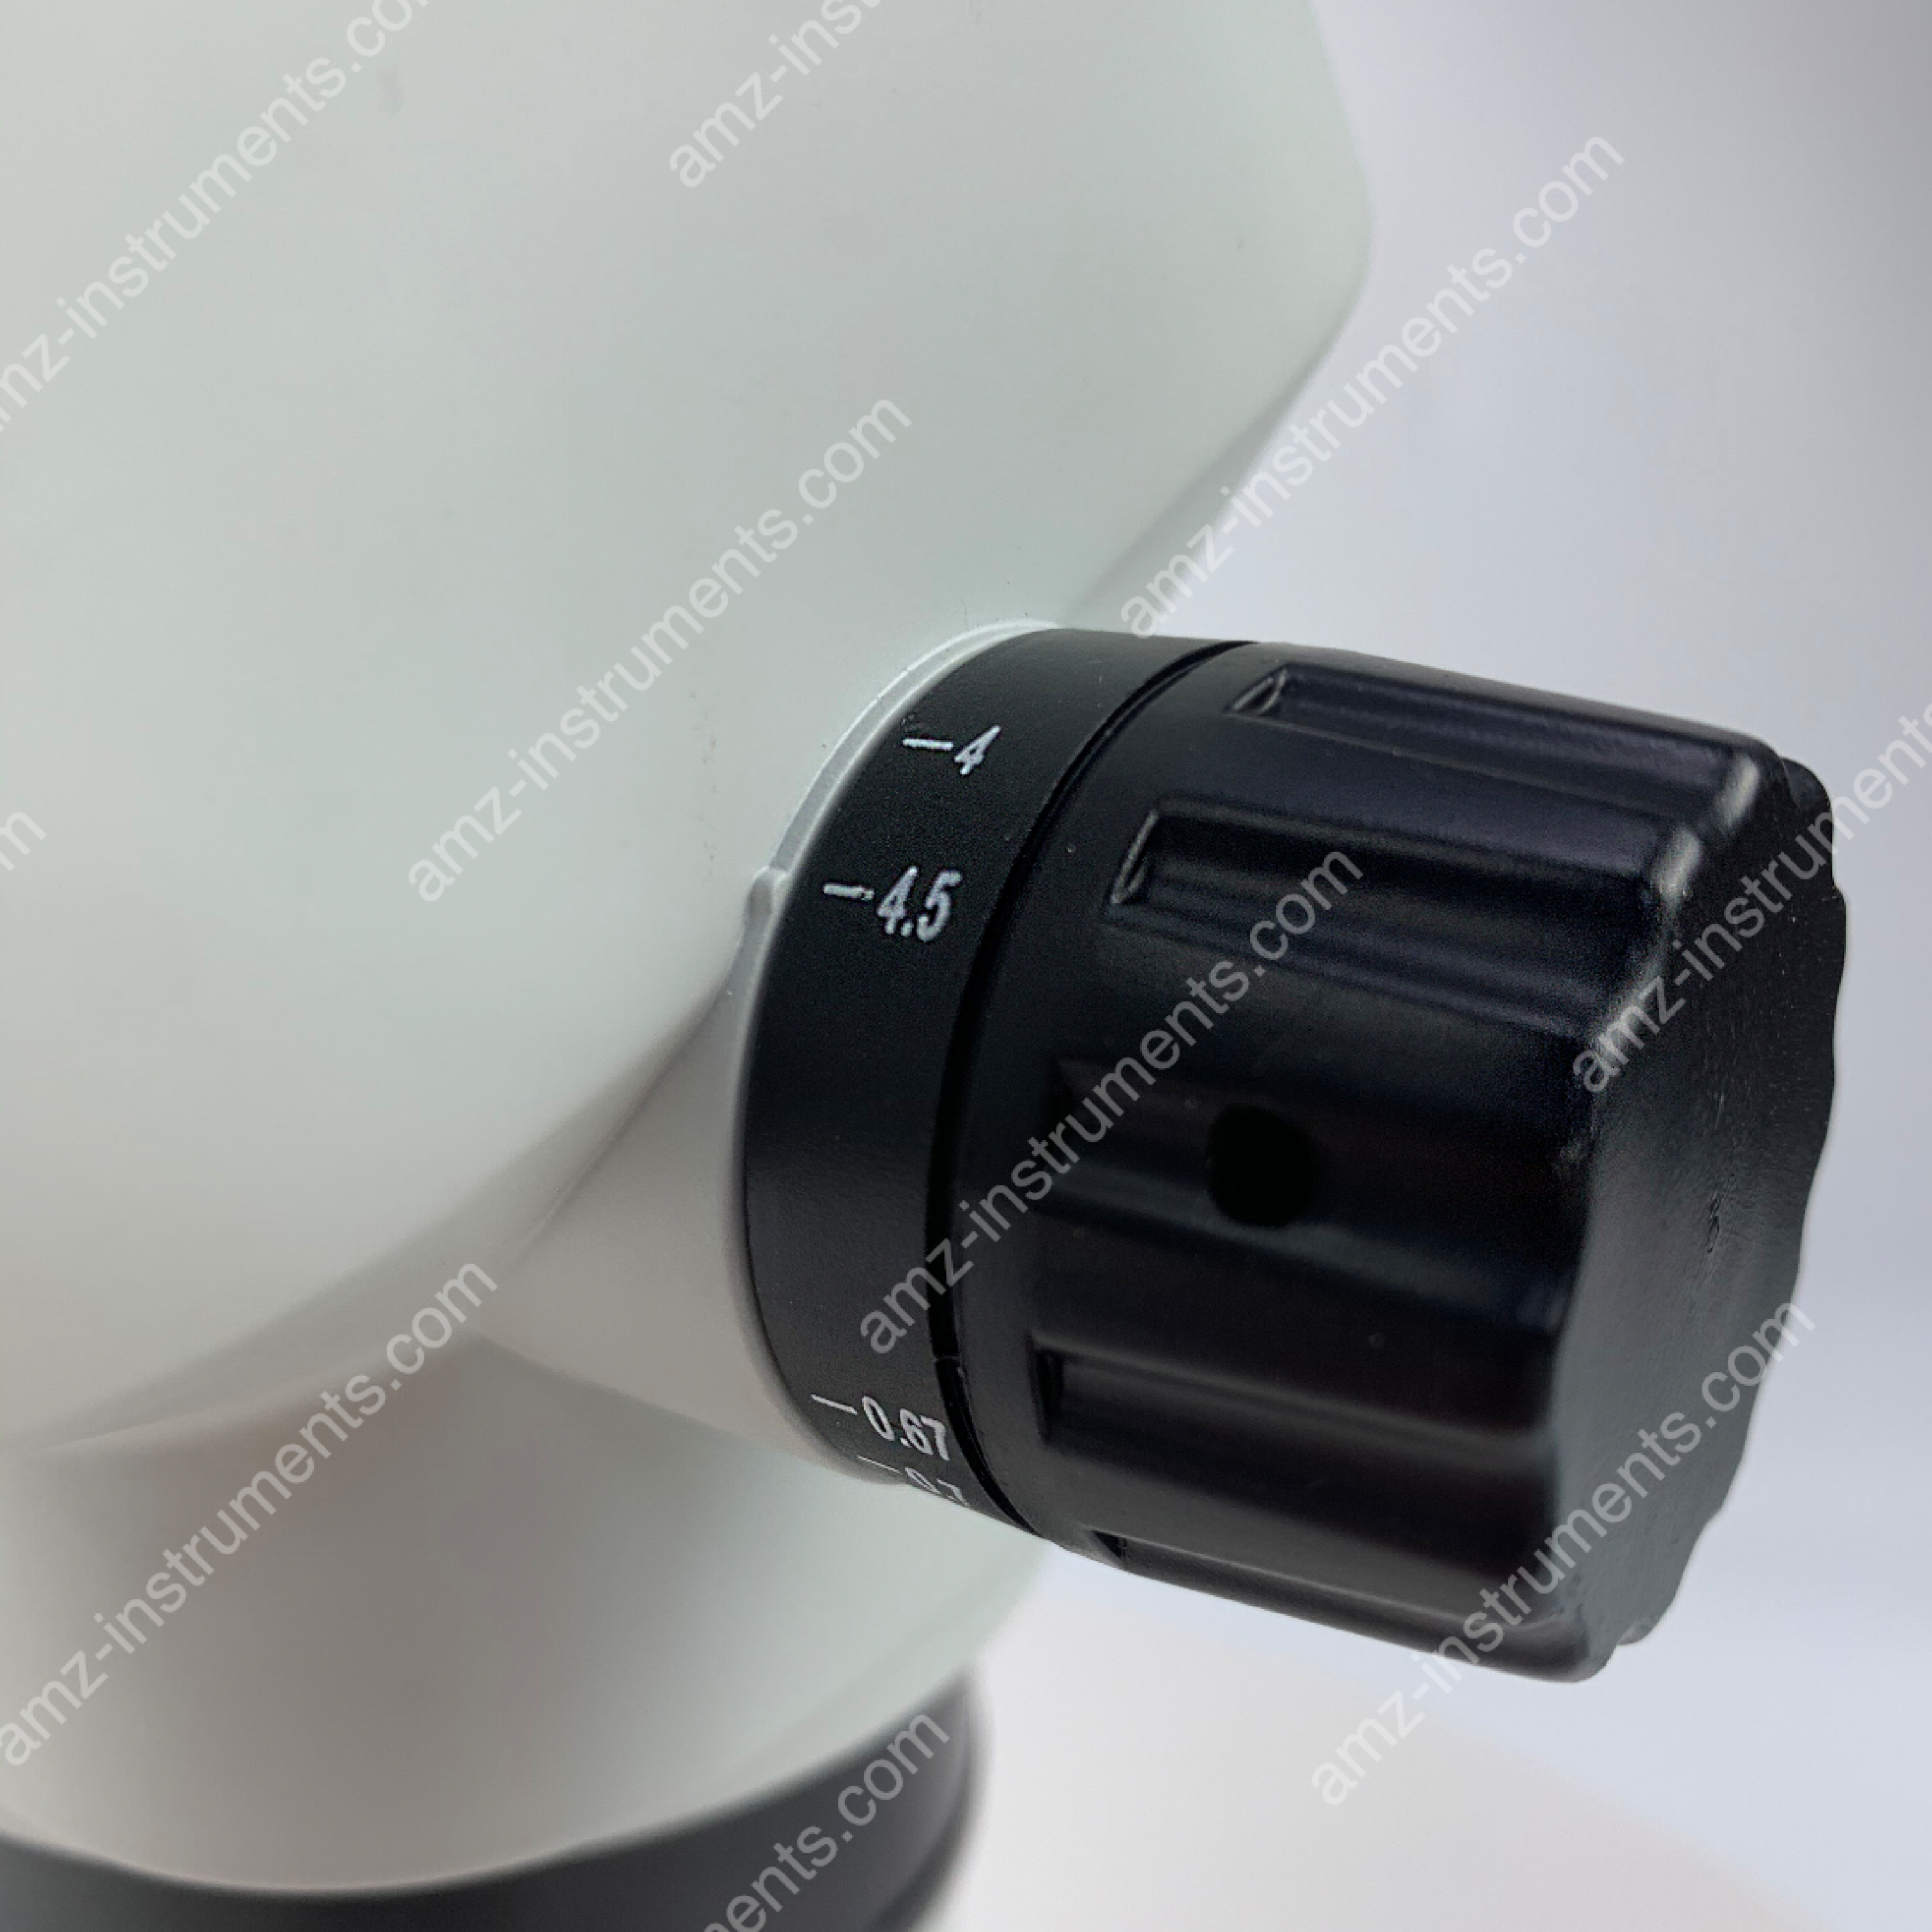 ZM-6745BH 6.7X-45X Ultimate Parfocal Binocular Stereo Zoom Microscopio